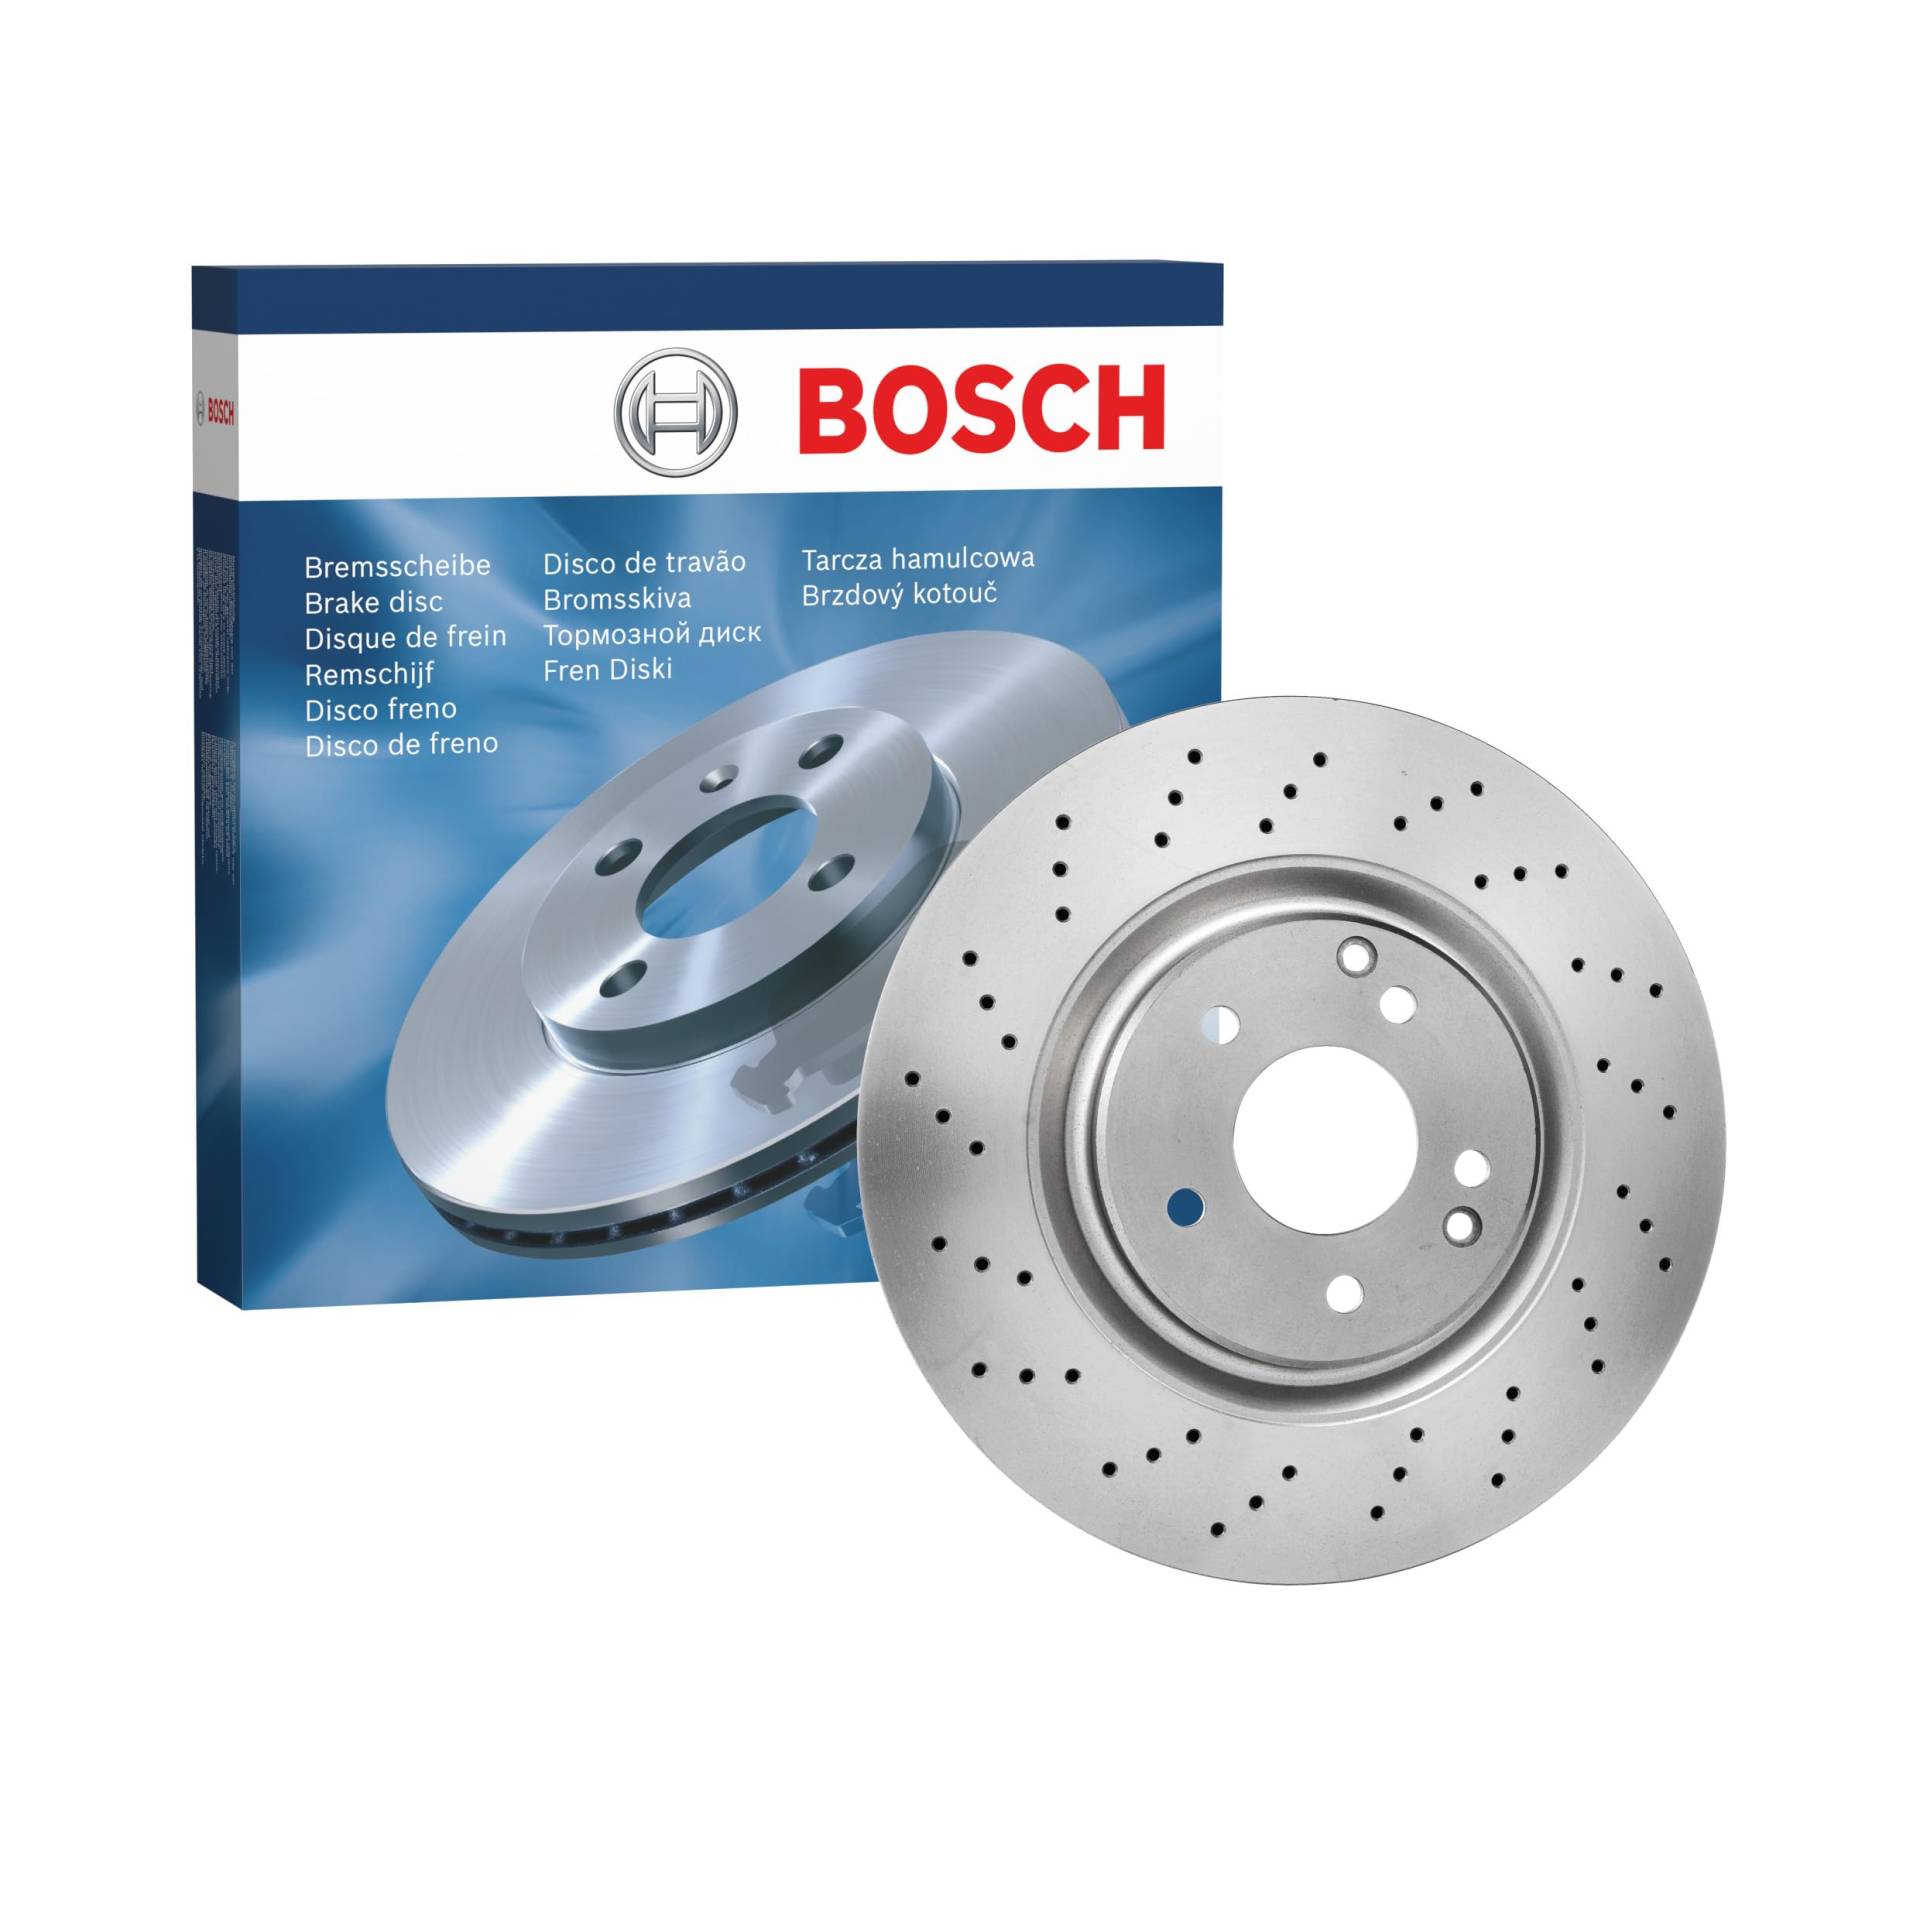 Bosch BD974 Bremsscheiben - Vorderachse - ECE-R90 Zertifizierung - eine Bremsscheibe von Bosch Automotive